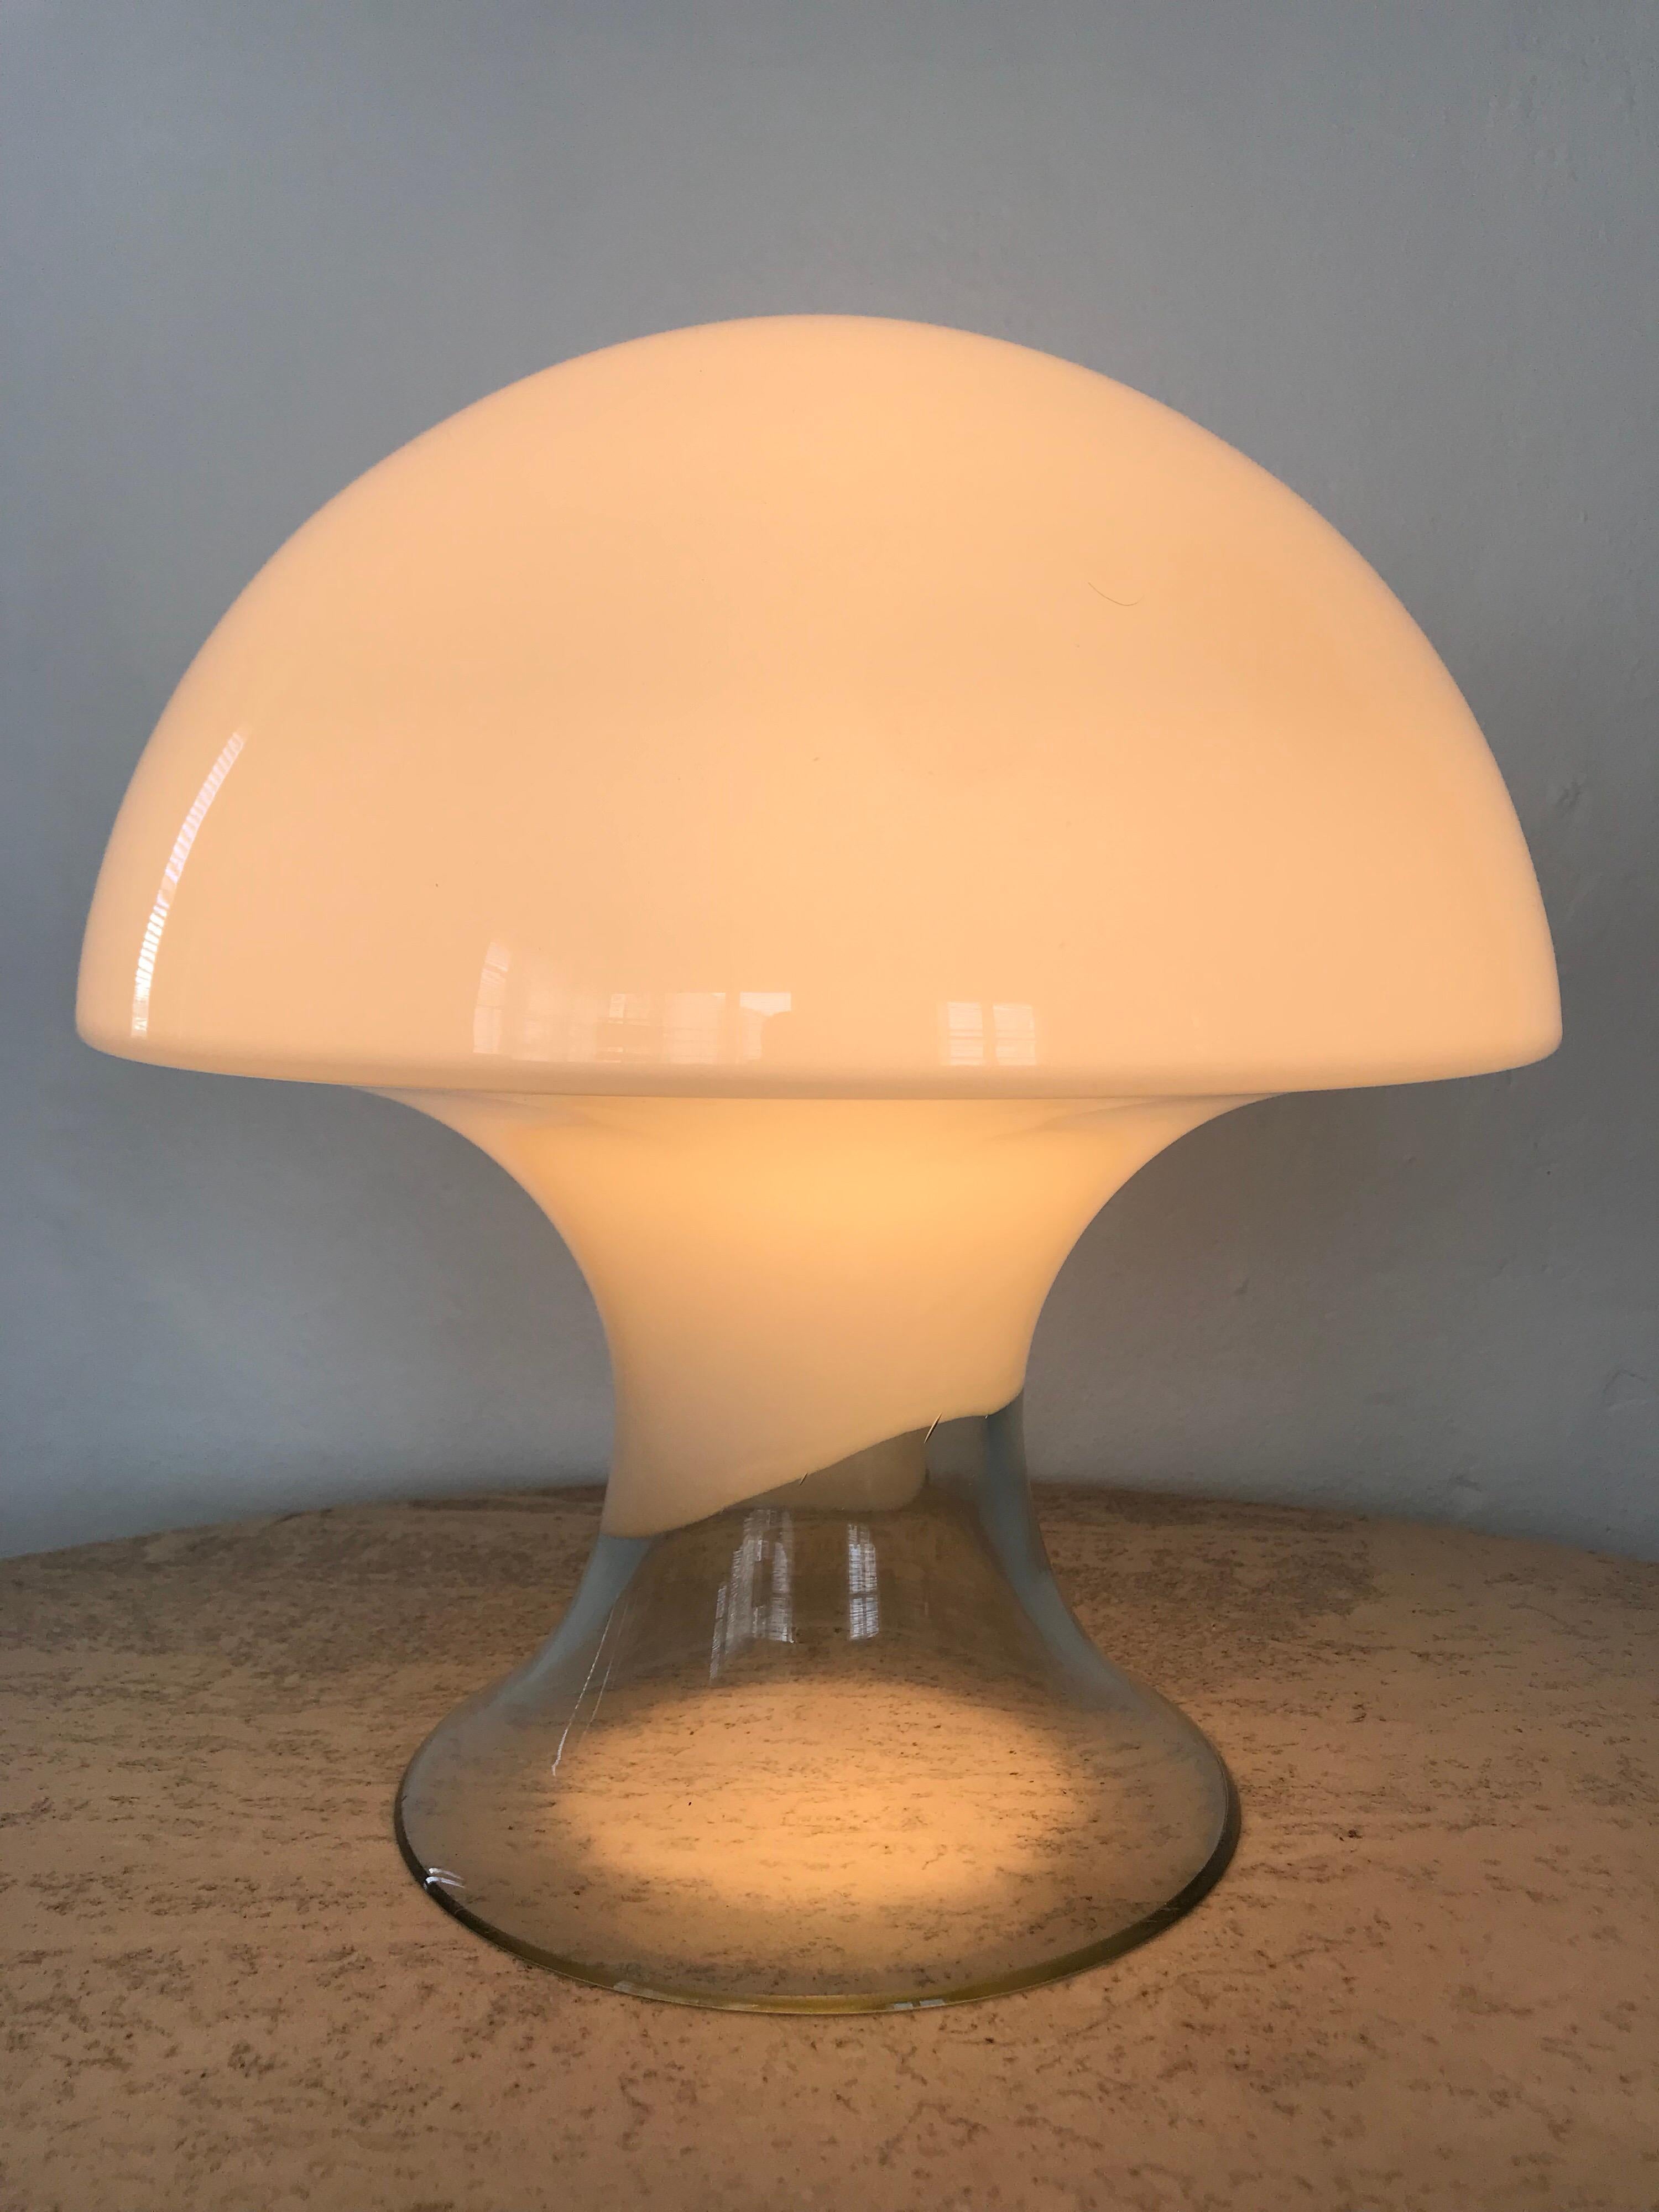 White and clear Murano glass mushroom lamp by Gino Vistosi.